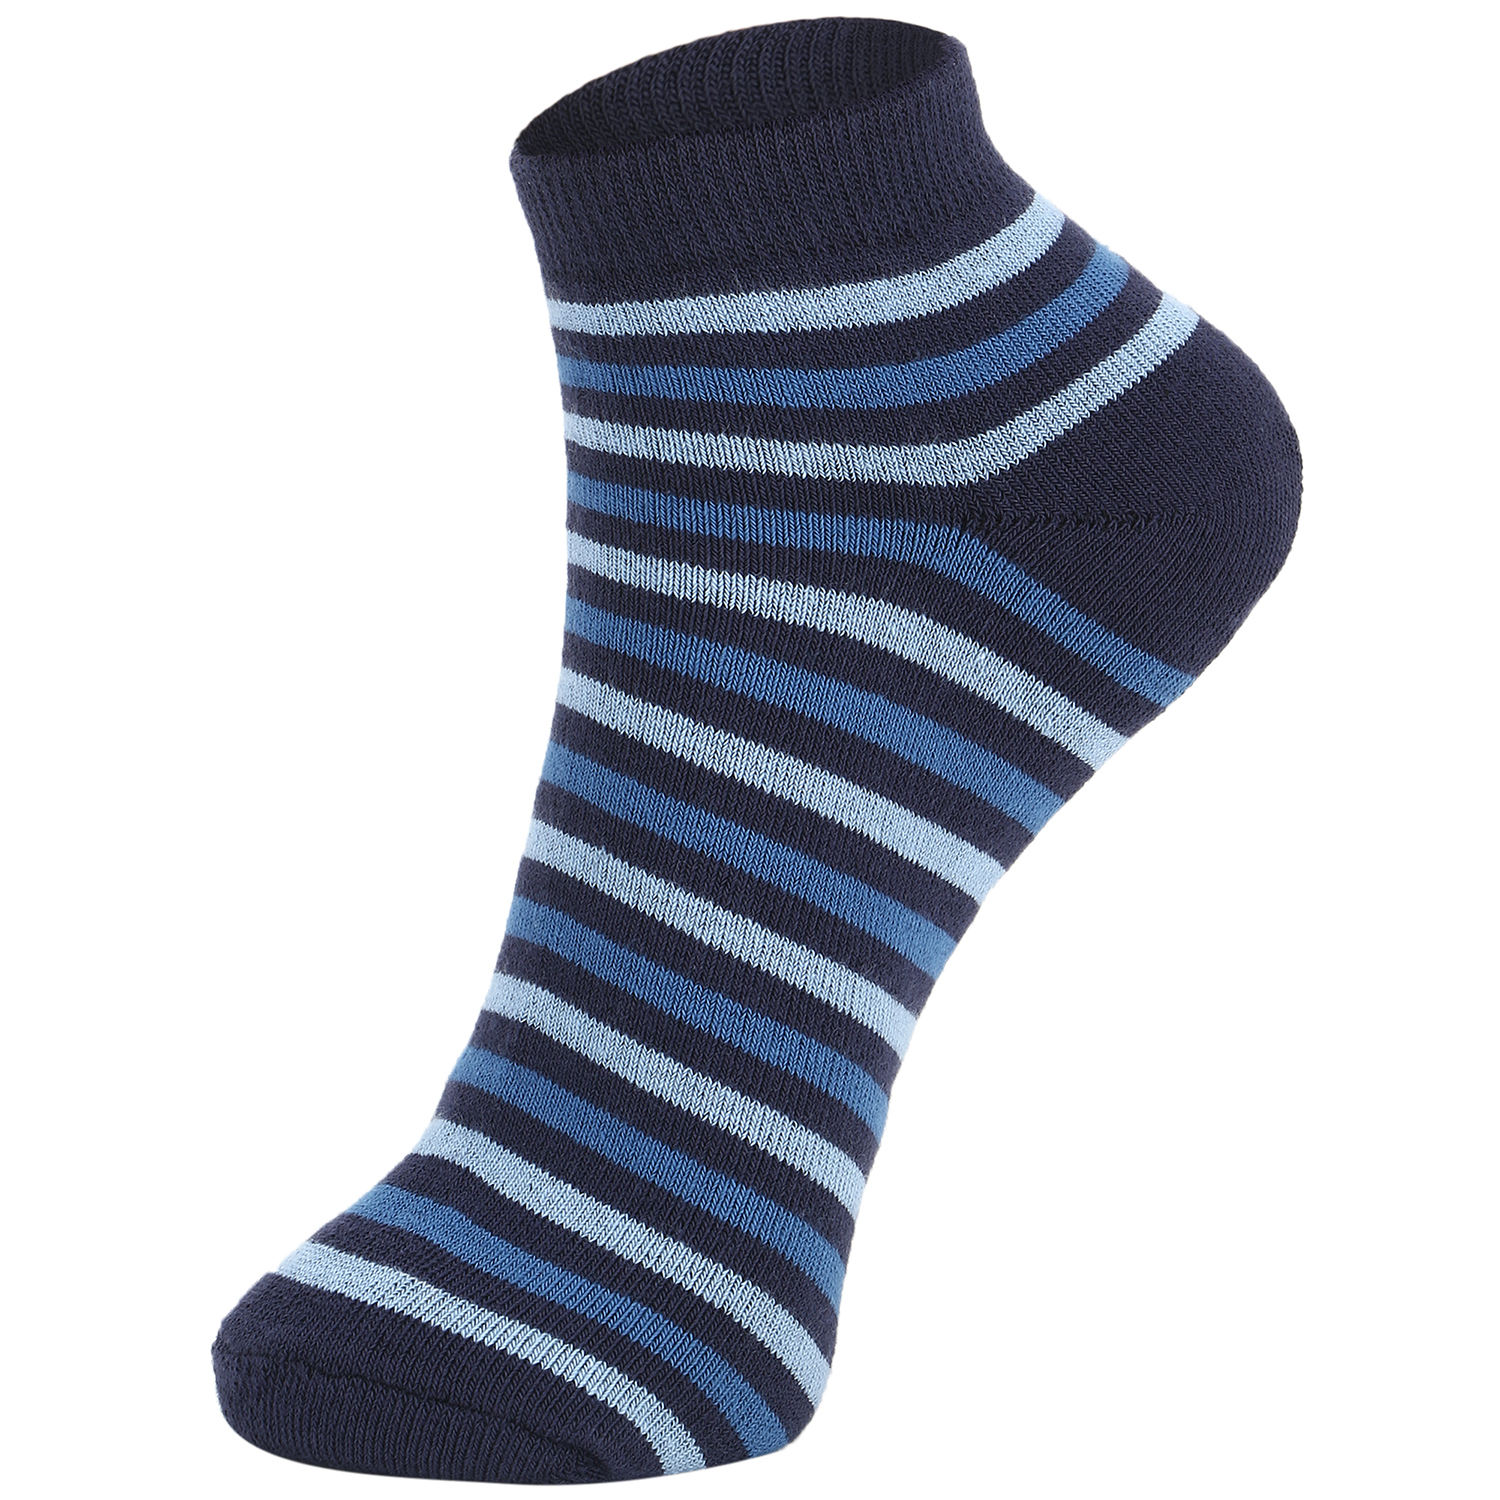 Buy DUKK Multi Pack Of 3 Ankle Socks Online @ ₹379 from ShopClues